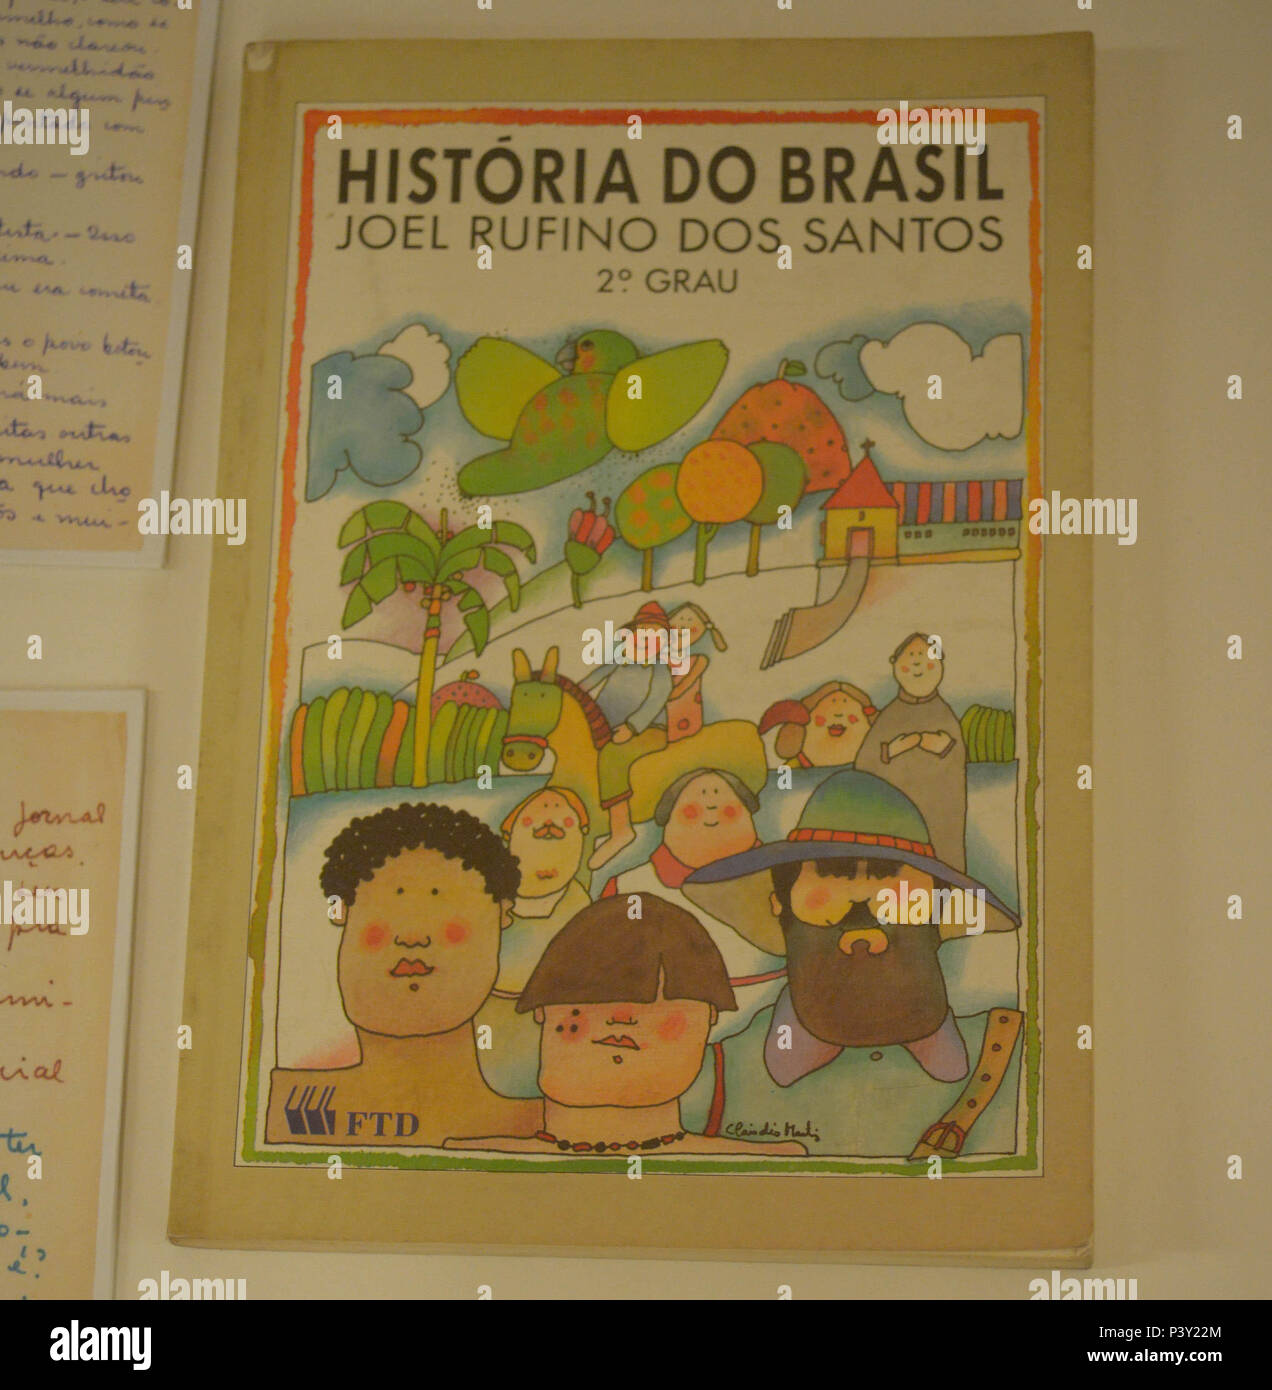 Livro de Joel Rufino dos Santos na exposição Carta Aberta – Correspondências na Prisão no Memorial da Resistência de São Paulo, localizado no centro de São Paulo. Stock Photo